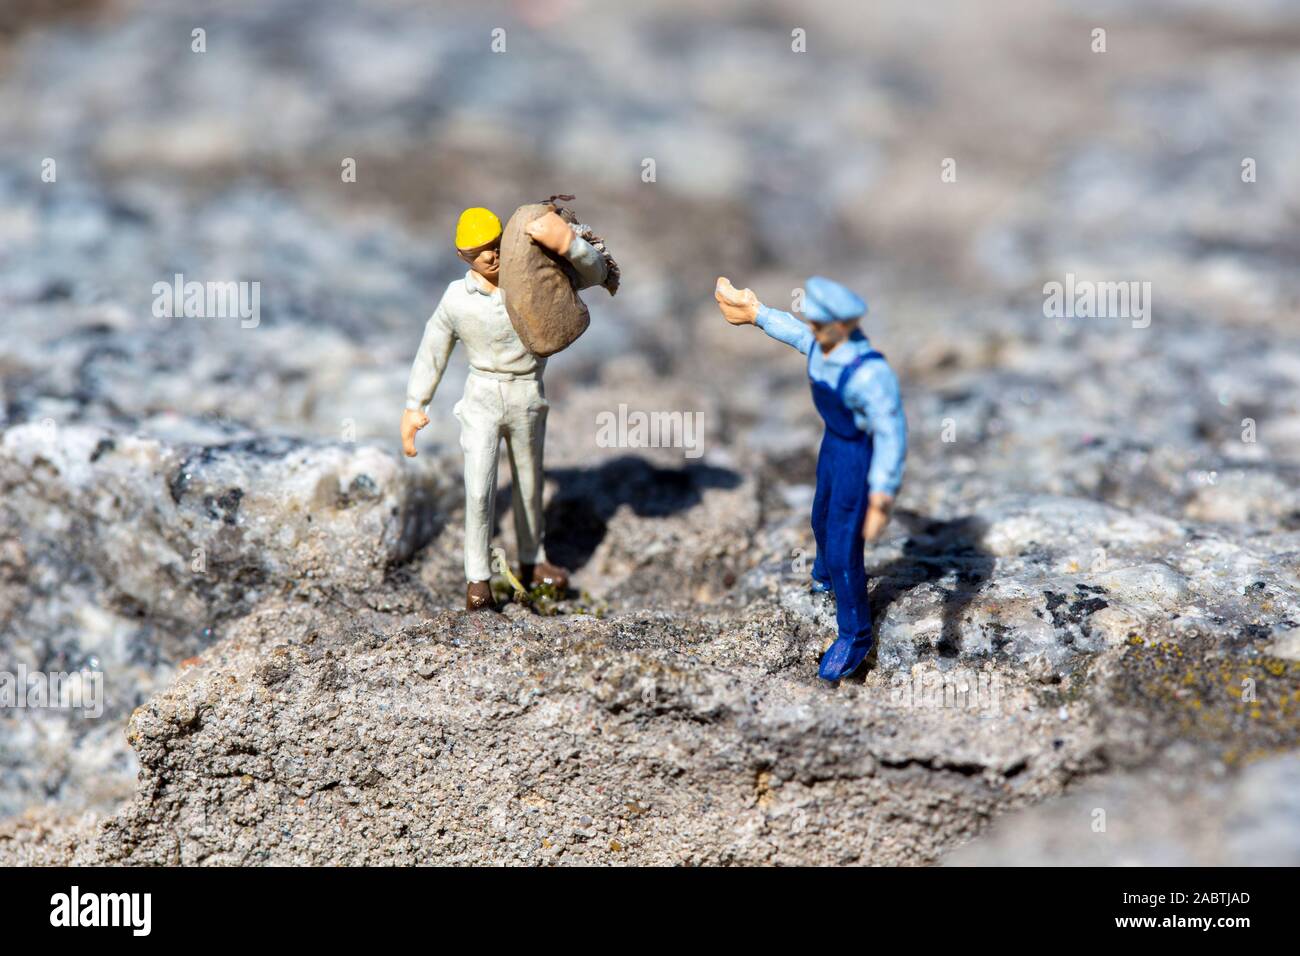 Lavoratore in miniatura con un martello che lavora in una cava, mentre un istruttore che dà ordini e altri lavoratori sono vicini Foto Stock